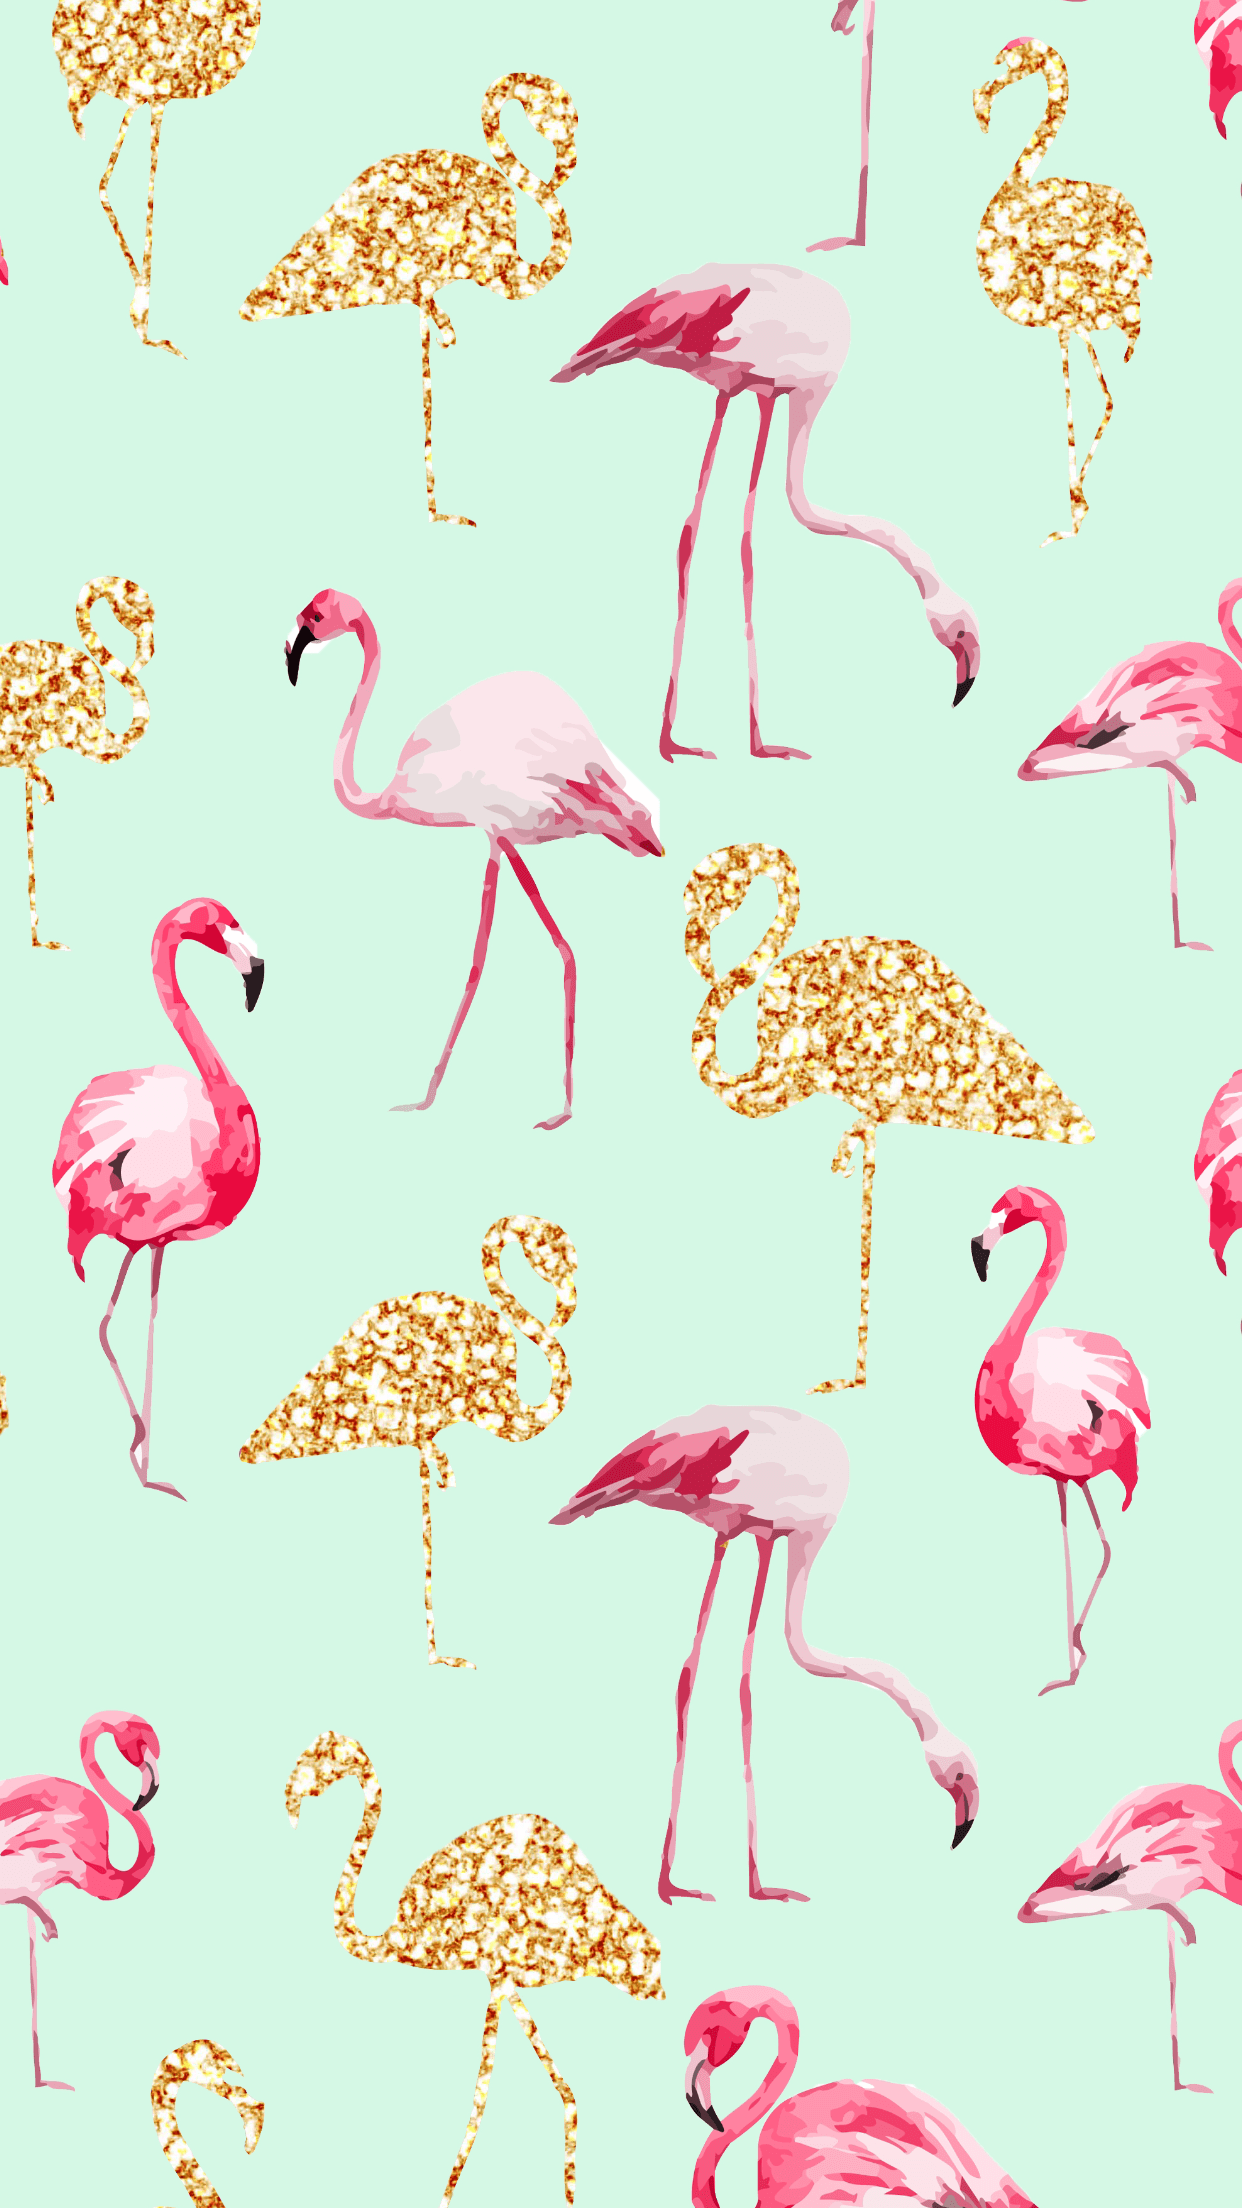 Flamingo. lB⅁. iPhone wallpaper, Wallpaper